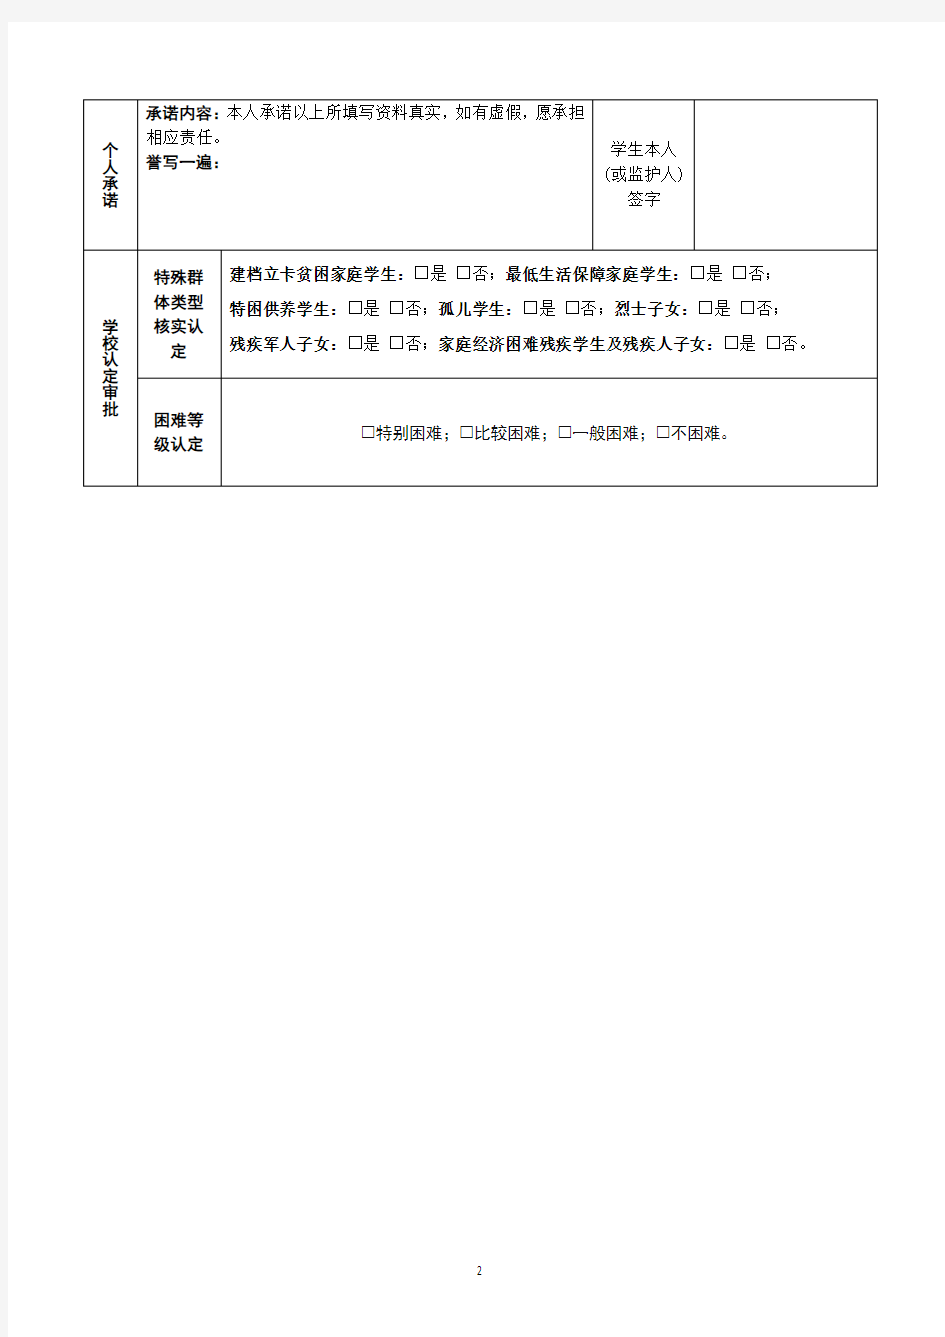 重庆市家庭经济困难学生认定申请表(样表)【模板】